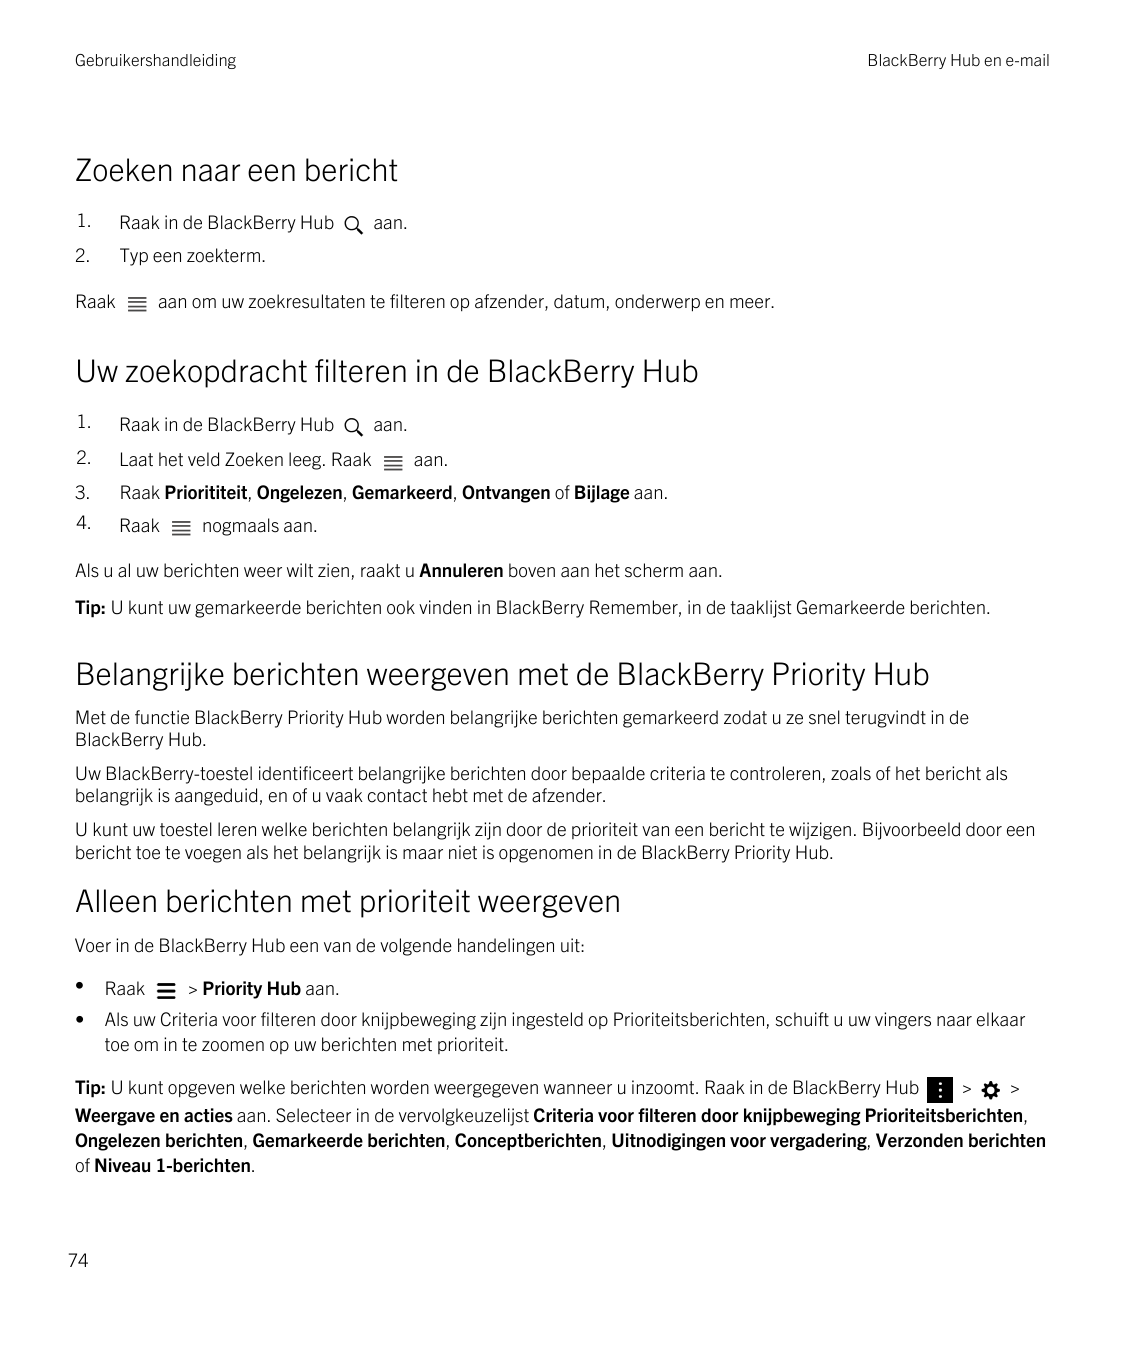 GebruikershandleidingBlackBerry Hub en e-mailZoeken naar een bericht1.Raak in de BlackBerry Hub2.Typ een zoekterm.Raakaan.aan om